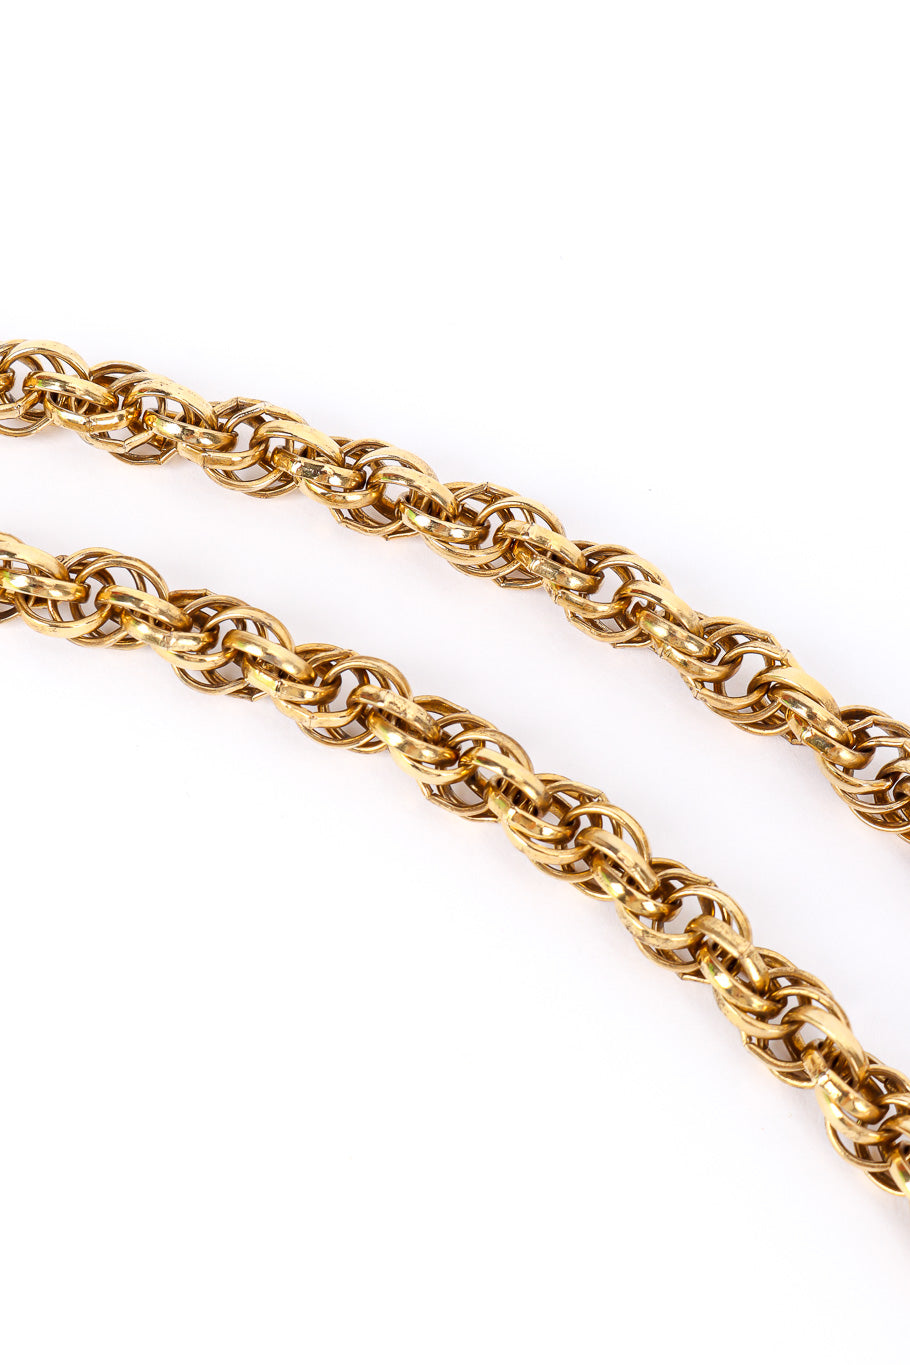 Vintage Etruscan Chain Fringe Necklace rolo chain closeup up @Recessla